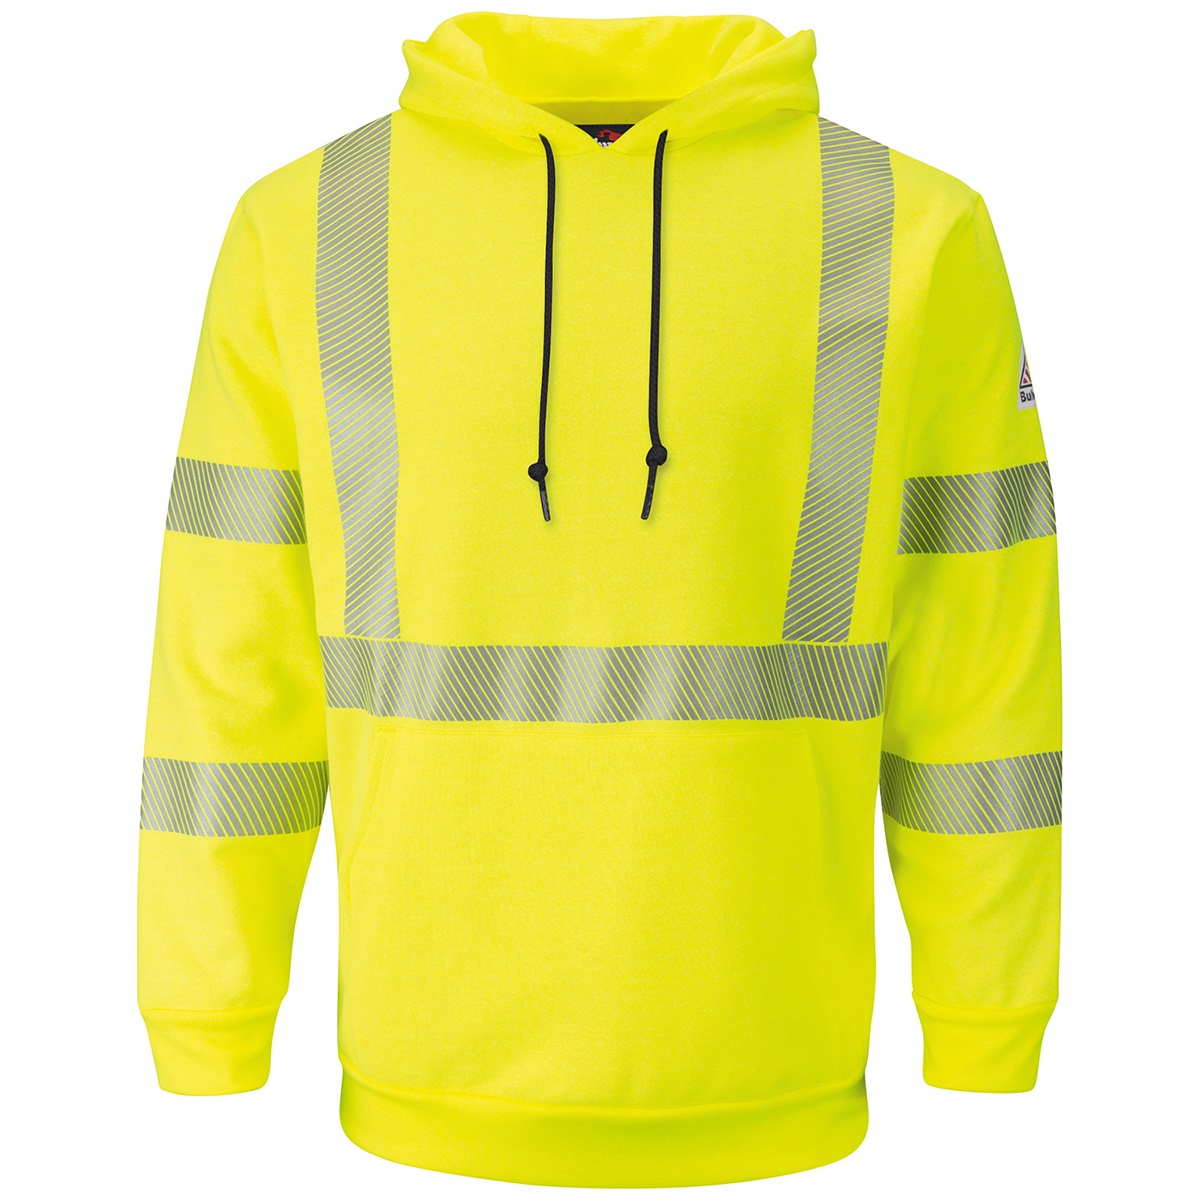 Bulwark FR Pullover Hooded Sweatshirt in Hi-Vis Yellow